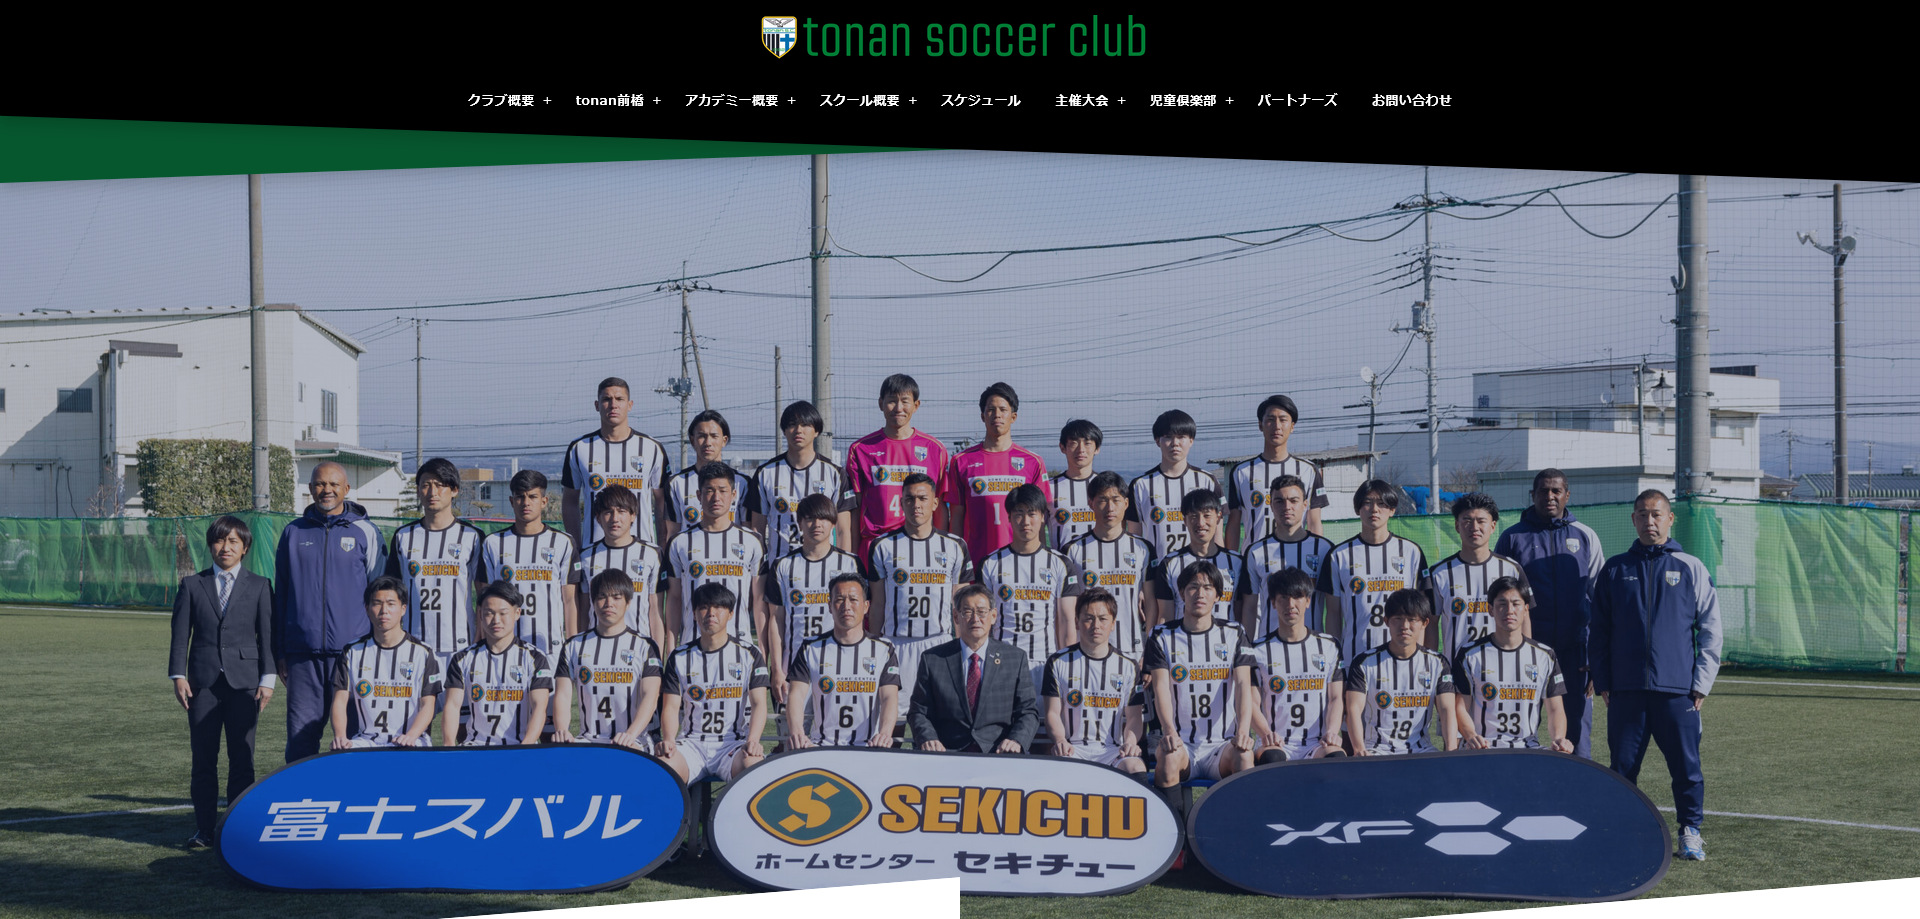 図南サッカークラブ